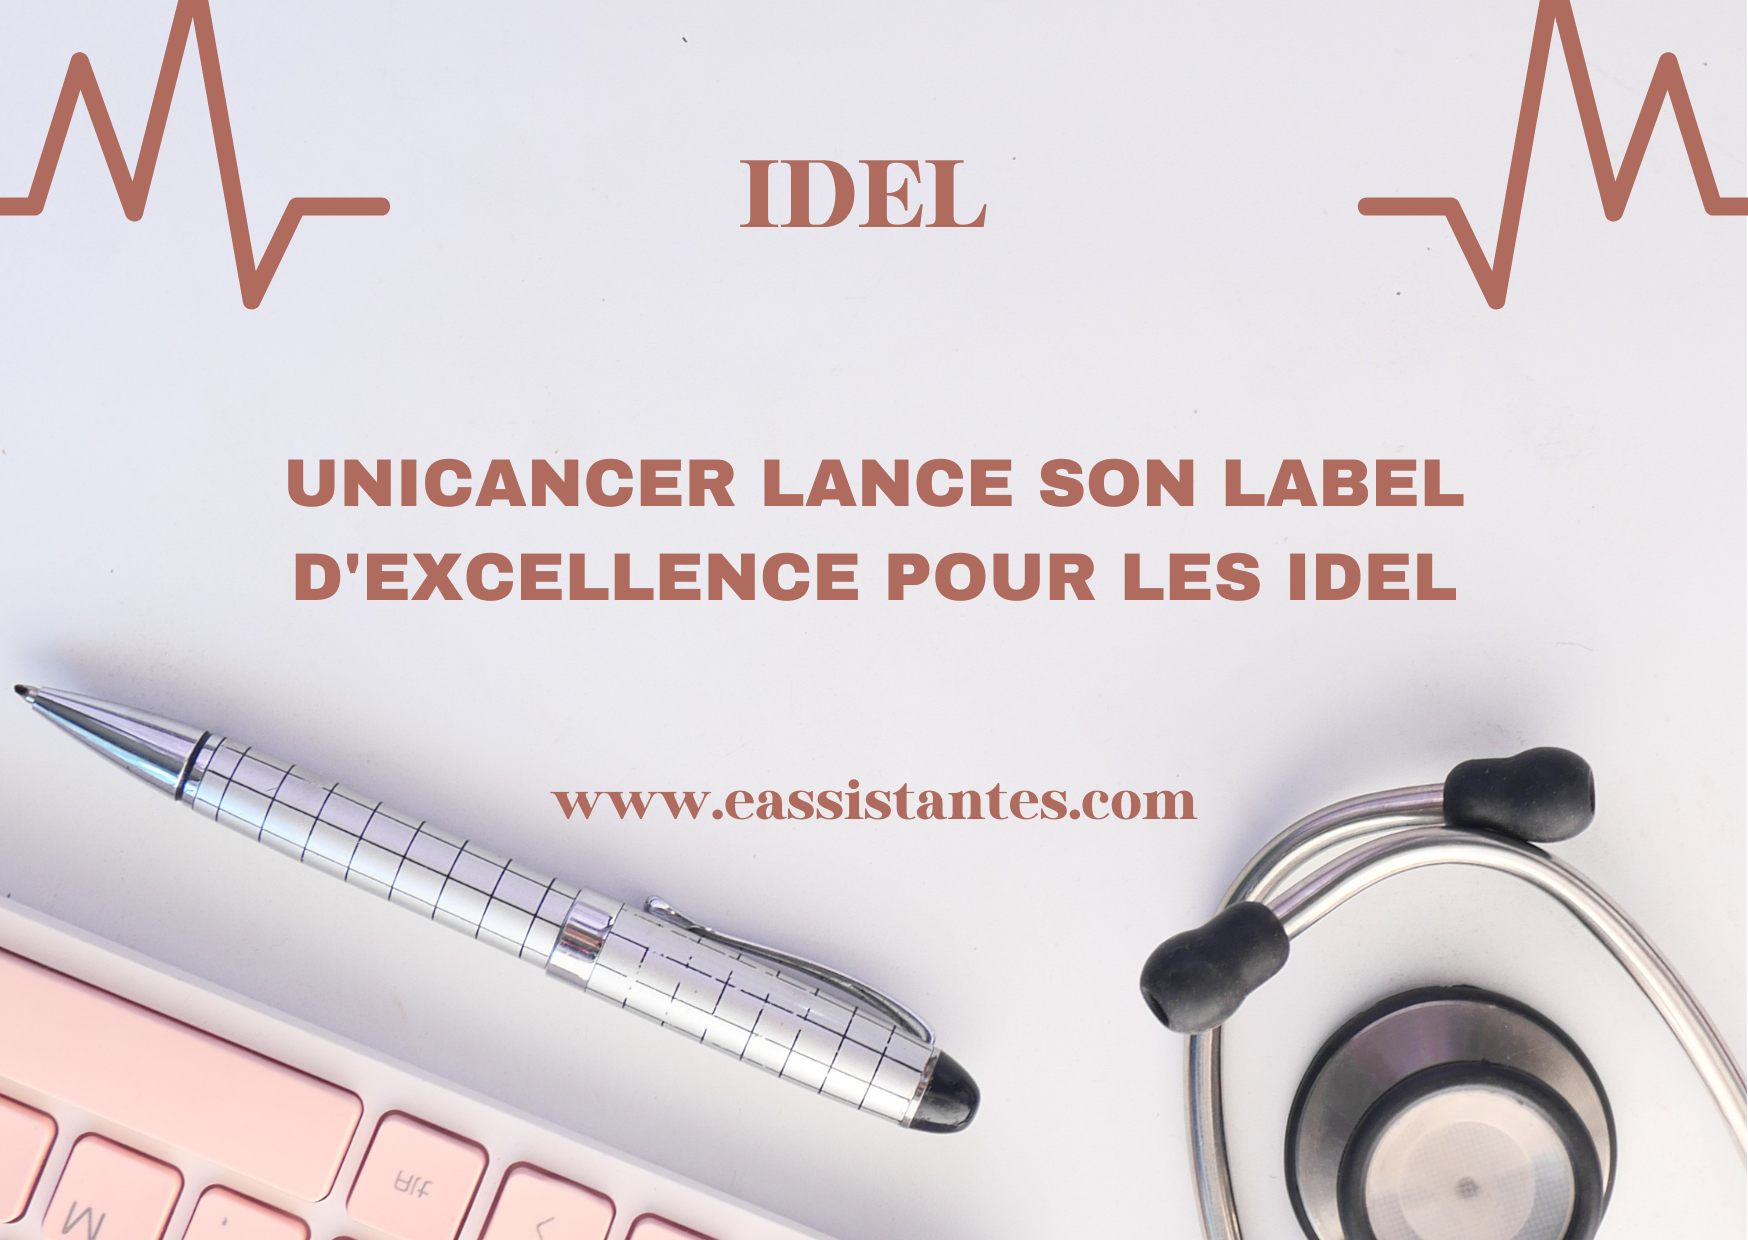 Unicancer lance son label "d'excellence" pour les IDEL